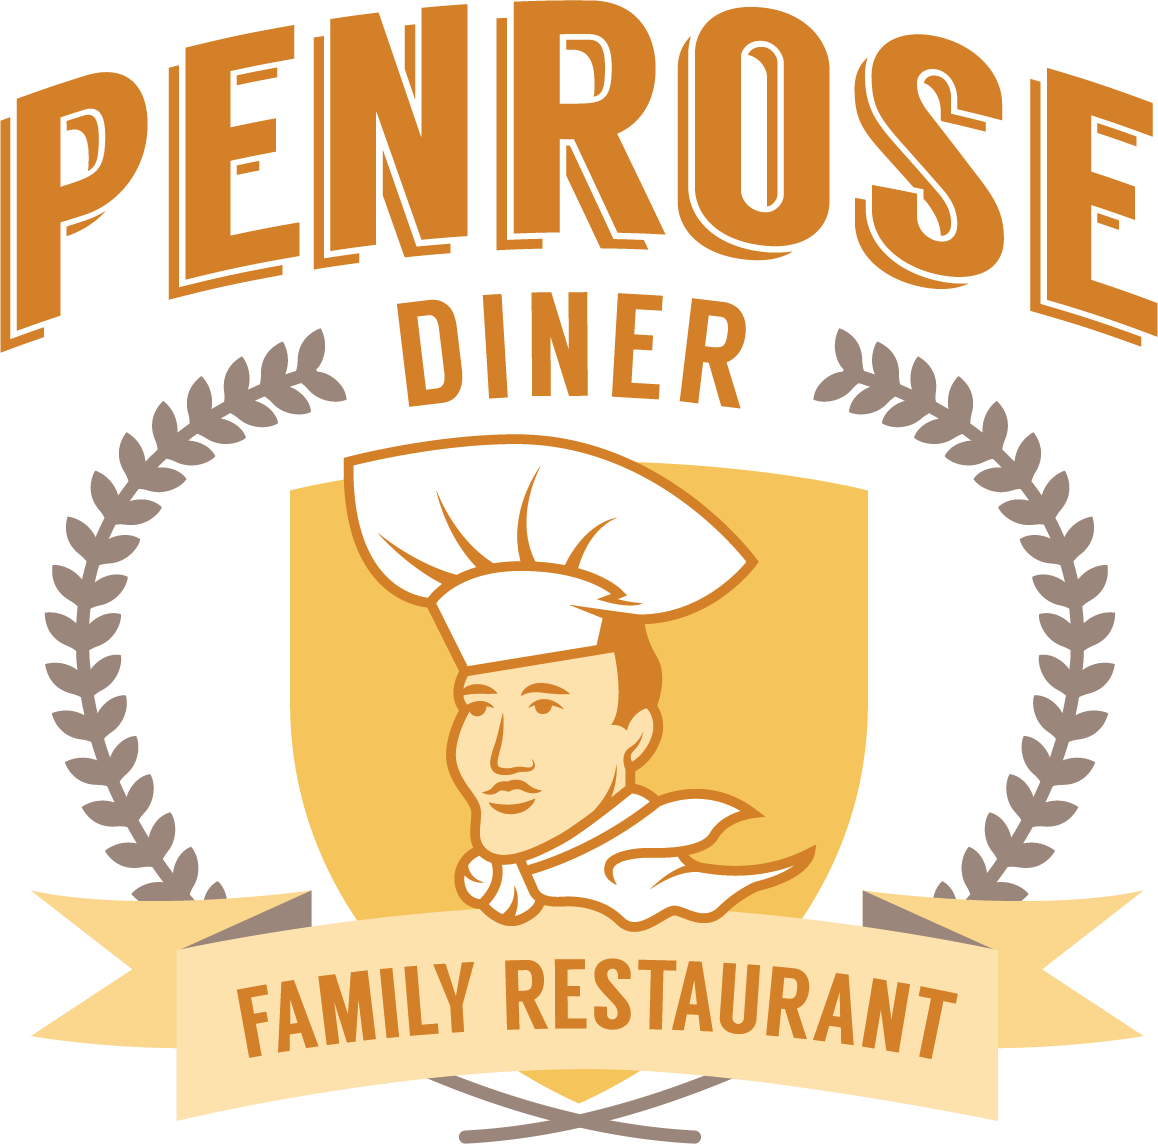 Penrose Diner - Philadelphia - South Philadelphia